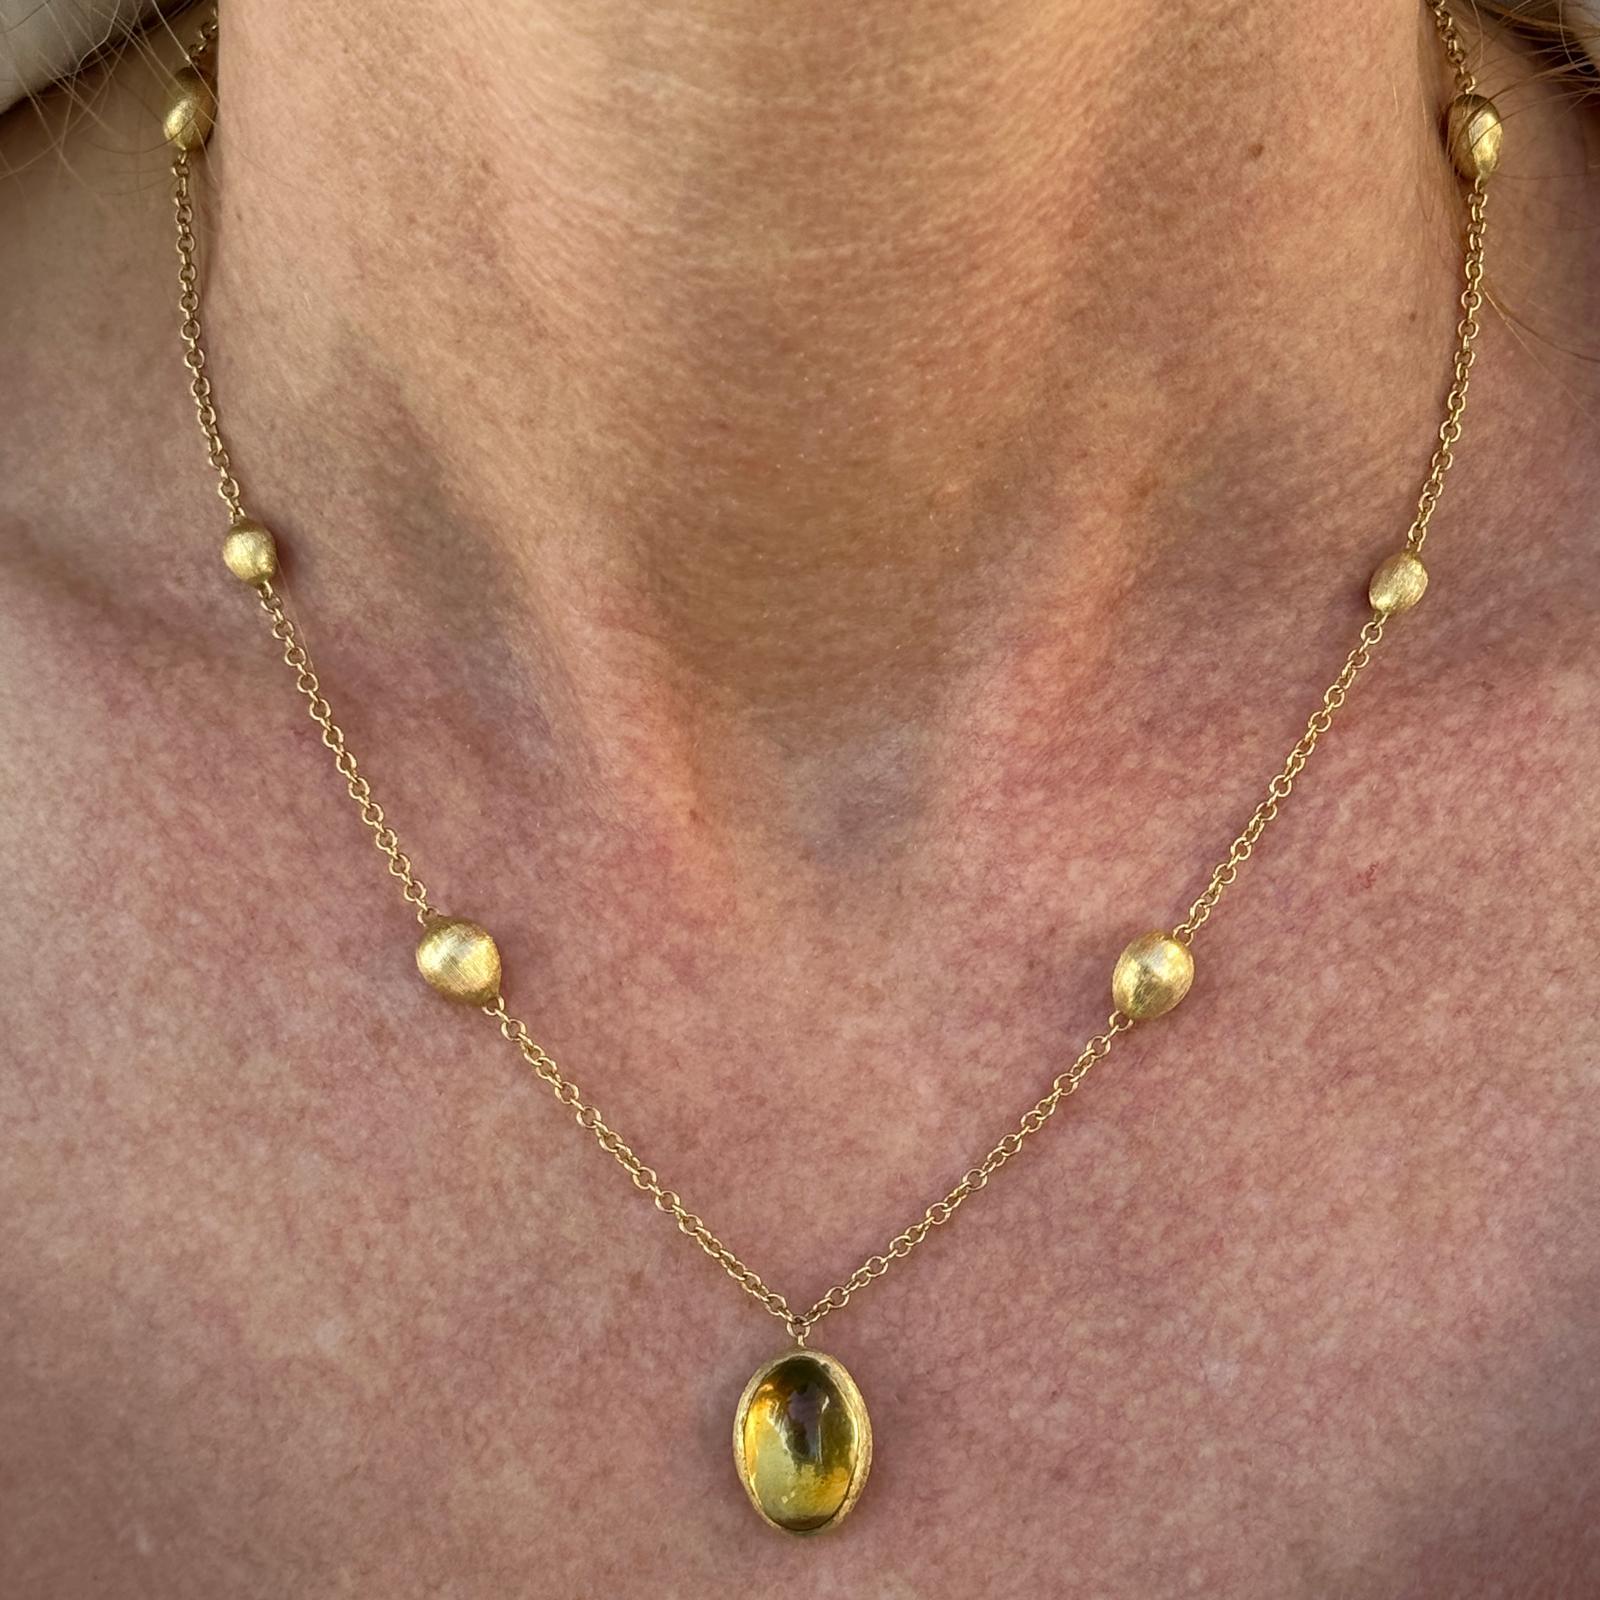 Marco Bicego Siviglia Halskette mit Citrin-Anhänger aus 18 Karat Gelbgold. Die Halskette verfügt über einen Cabochon Citrin Edelstein Anhänger von 10 x 15 mm, und die Halskette misst 16,25 cm in der Länge. Gewicht: 9,3 Gramm.